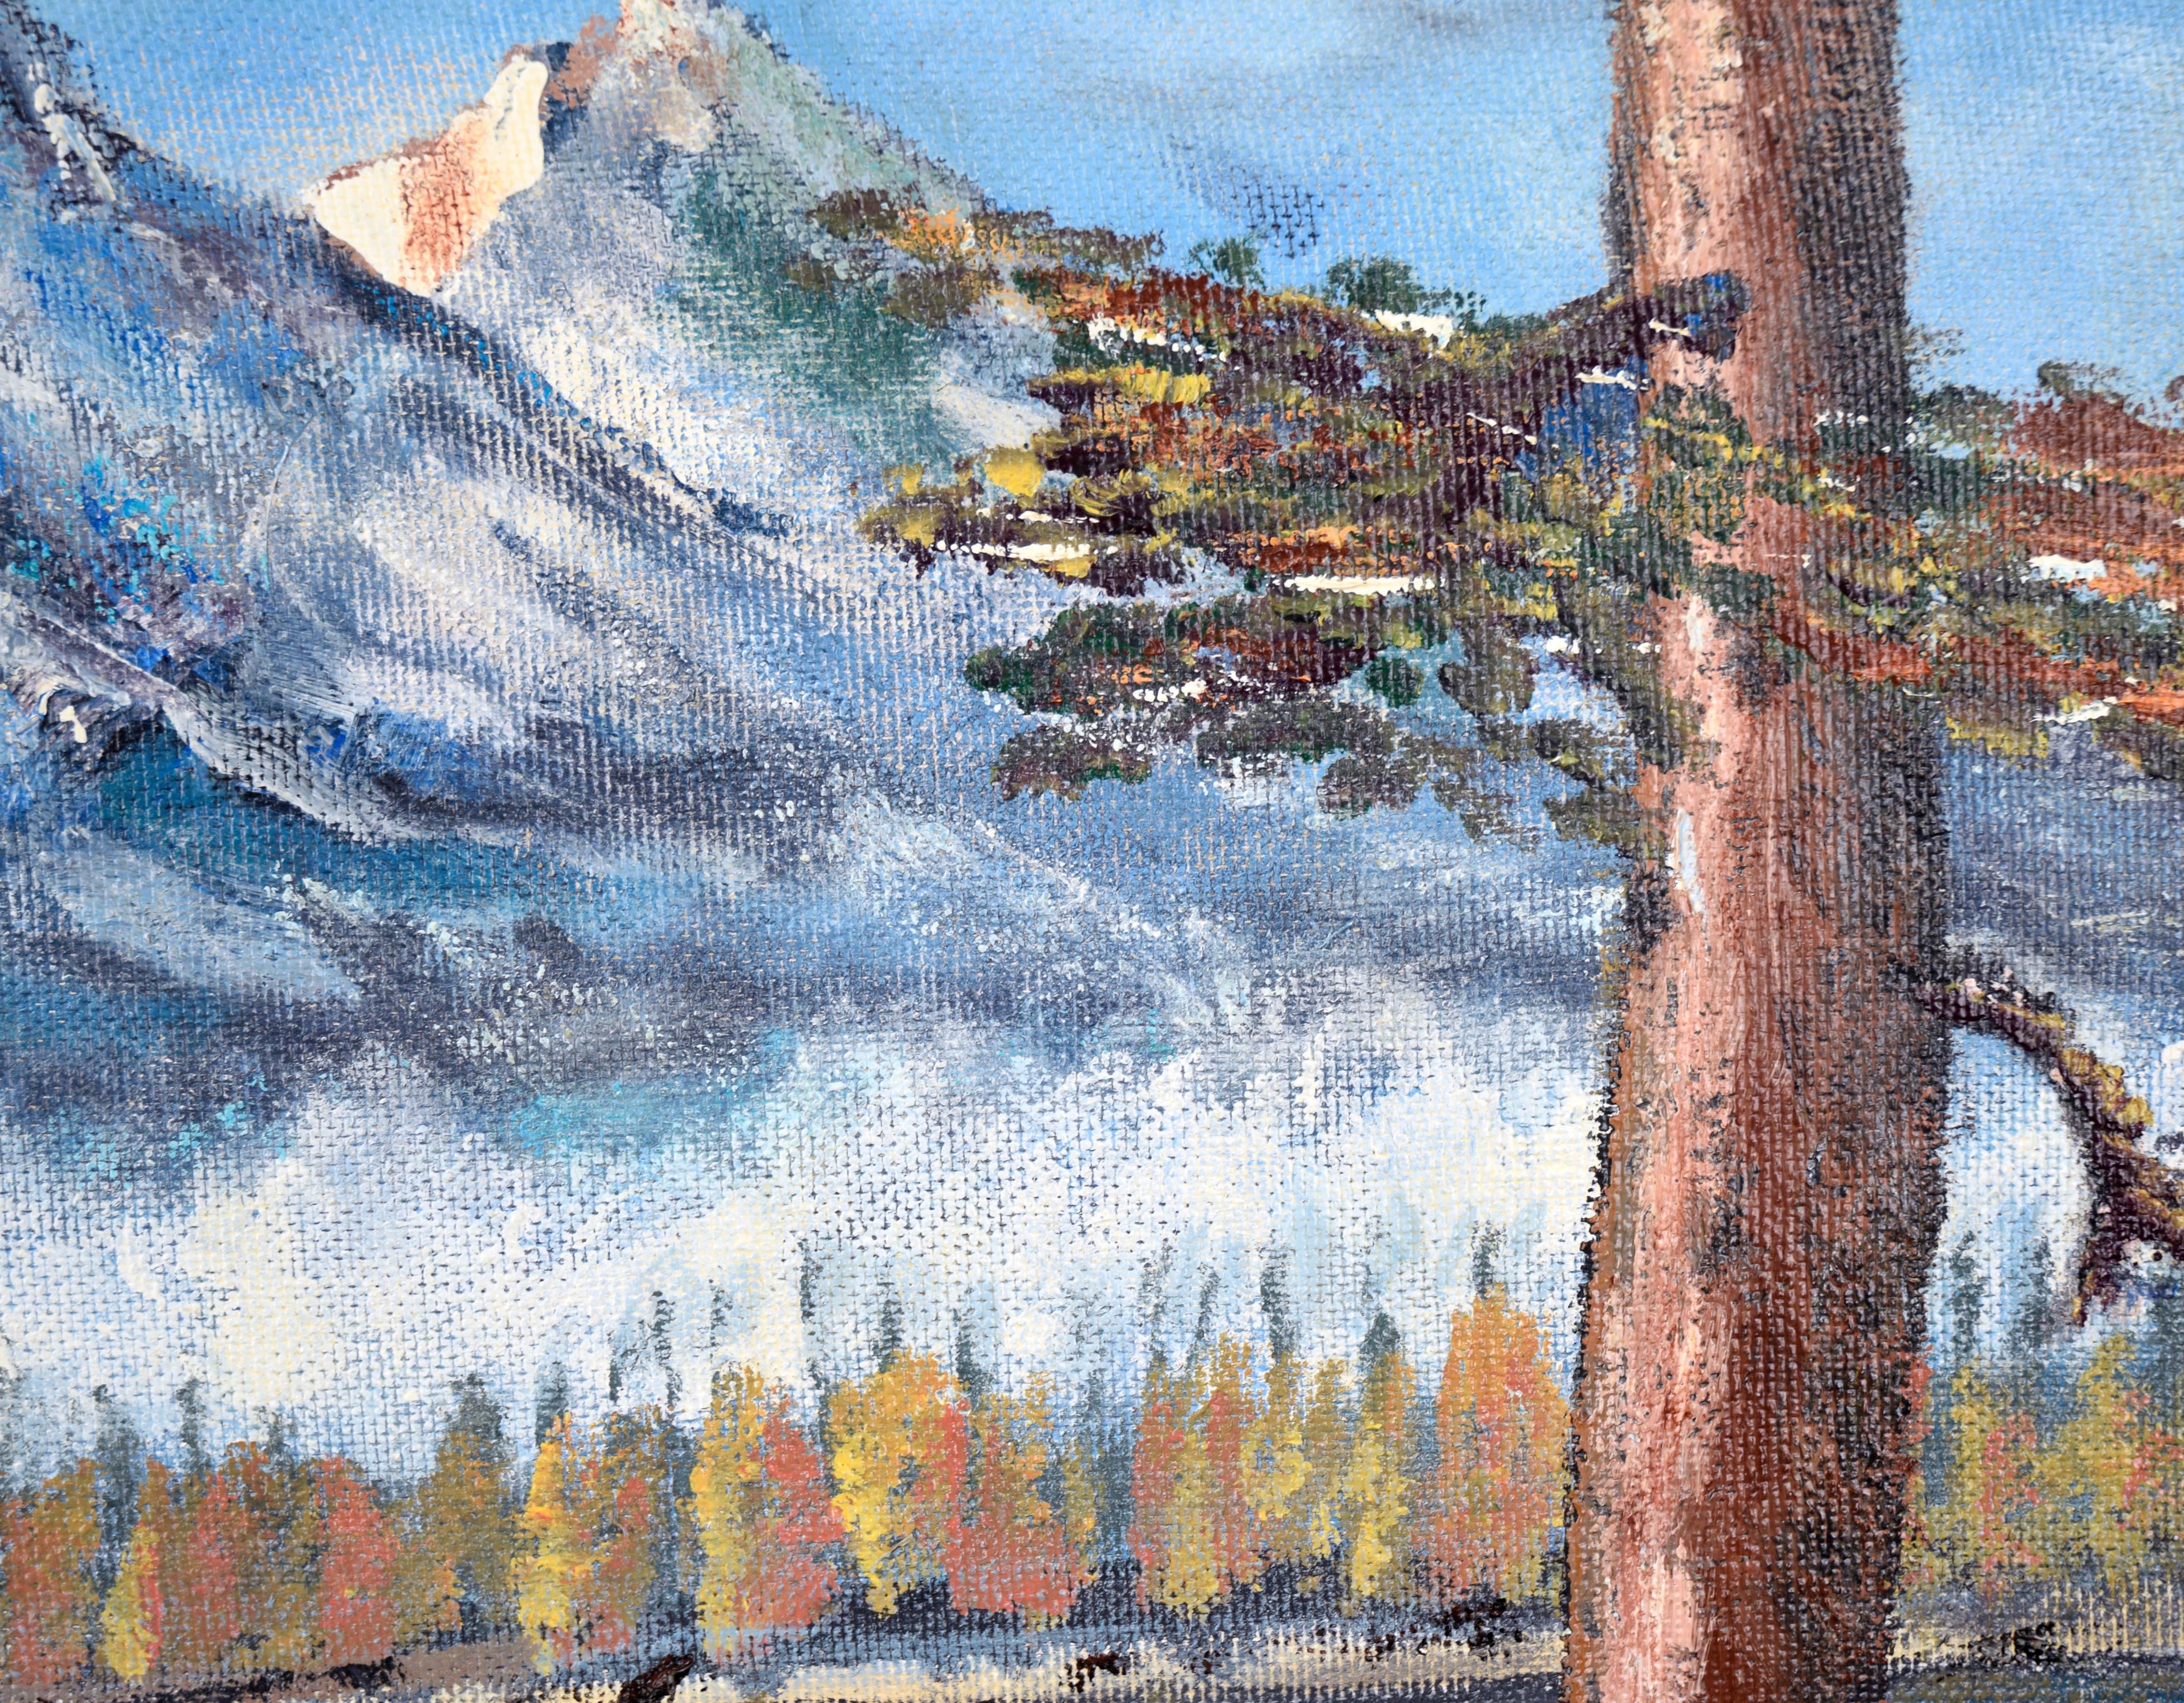 Dramatische Berglandschaft von L. V. Burns (20. Jahrhundert). Drei mächtige schneebedeckte Berggipfel erheben sich über einem glitzernden See. Große immergrüne Bäume stehen am linken Rand des Sees, und einer befindet sich direkt neben dem